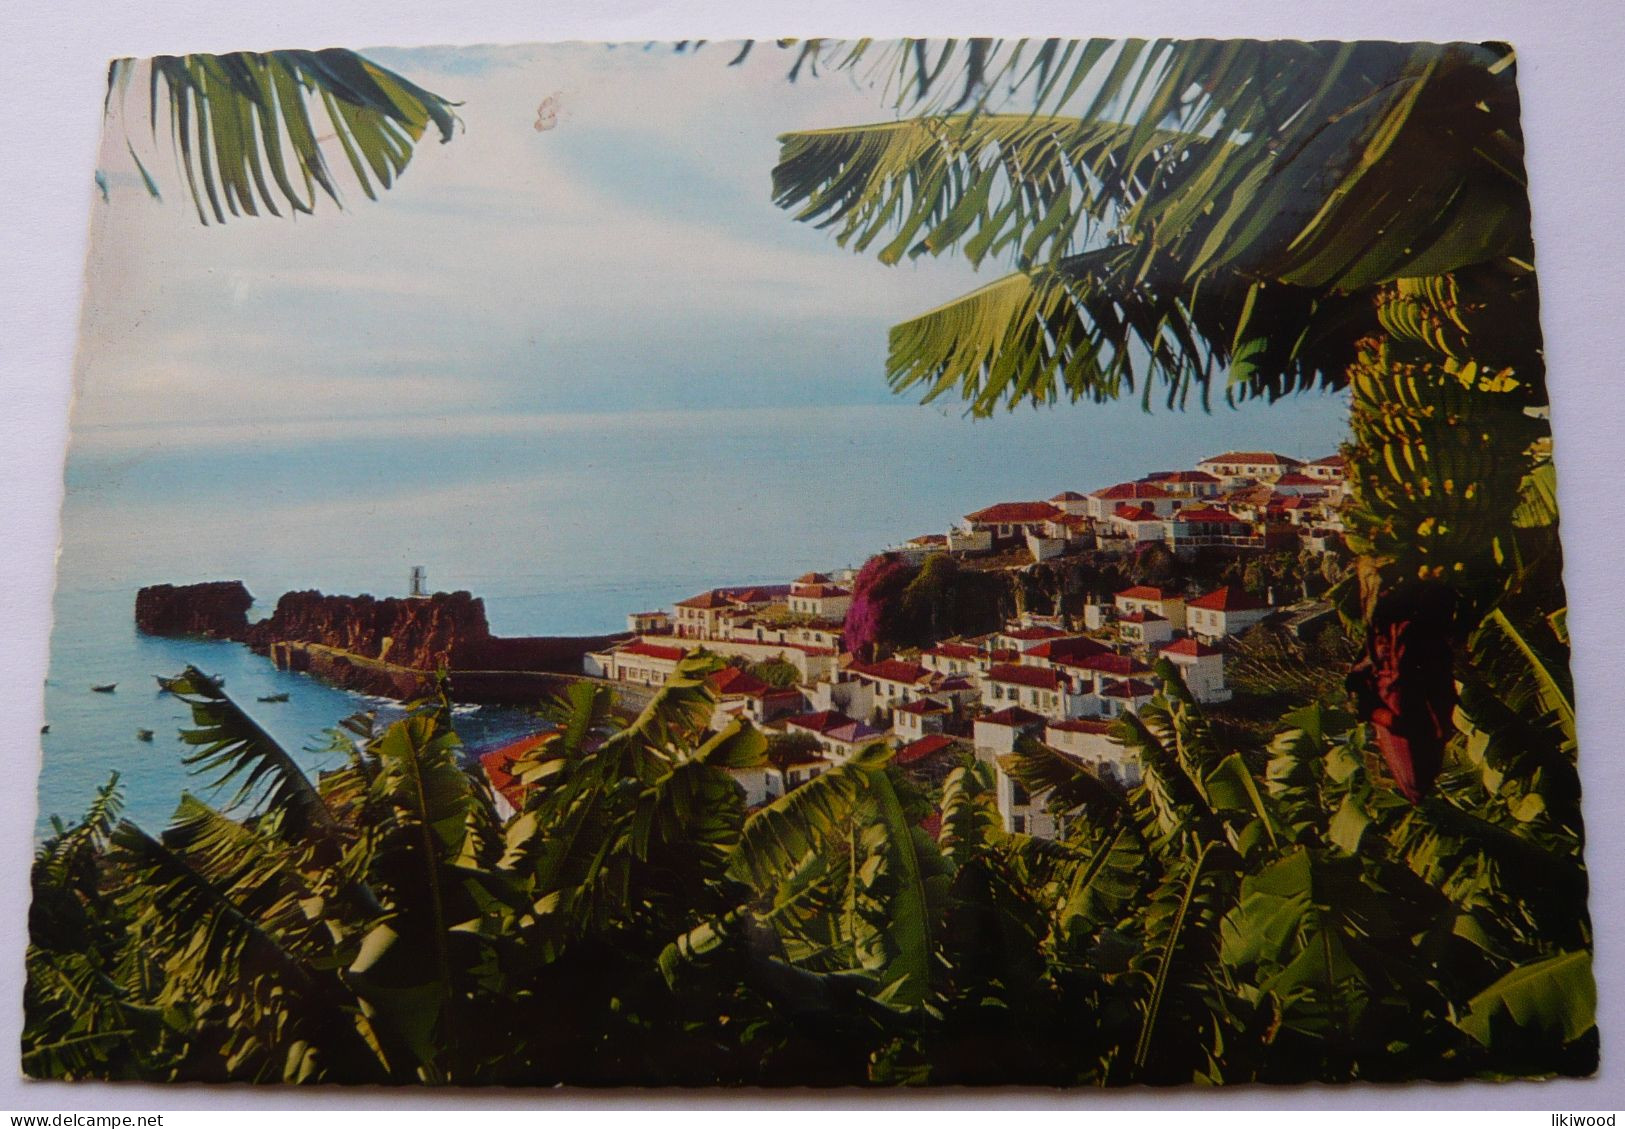 Madeira, Camara De Lobos: Aidela Piscatoria - Fishing Village  - Portugal, República Portuguesa - Madeira